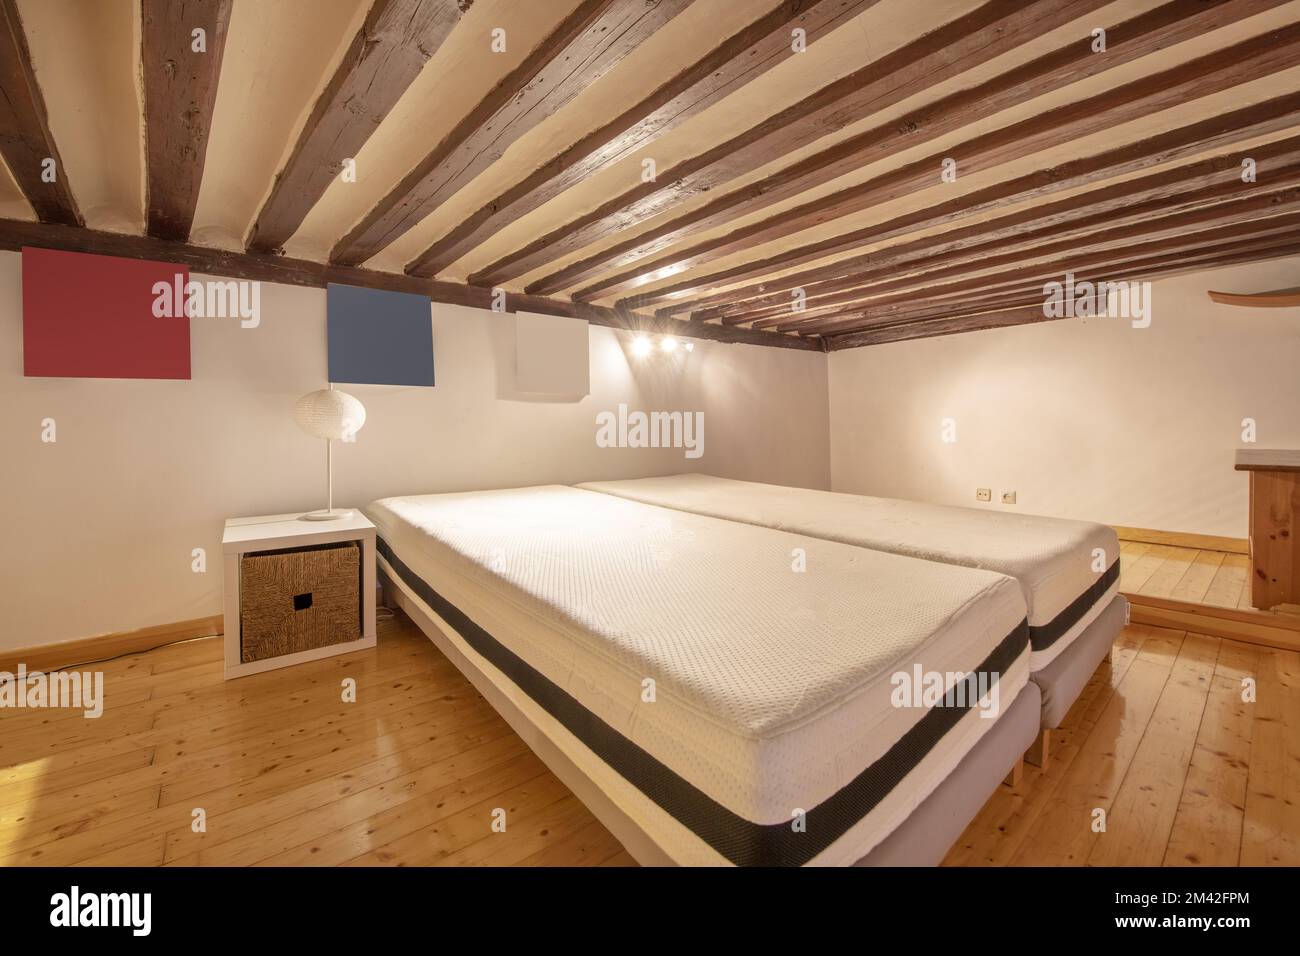 Camera su soppalco con soffitti con travi in legno e materassi senza letti Foto Stock